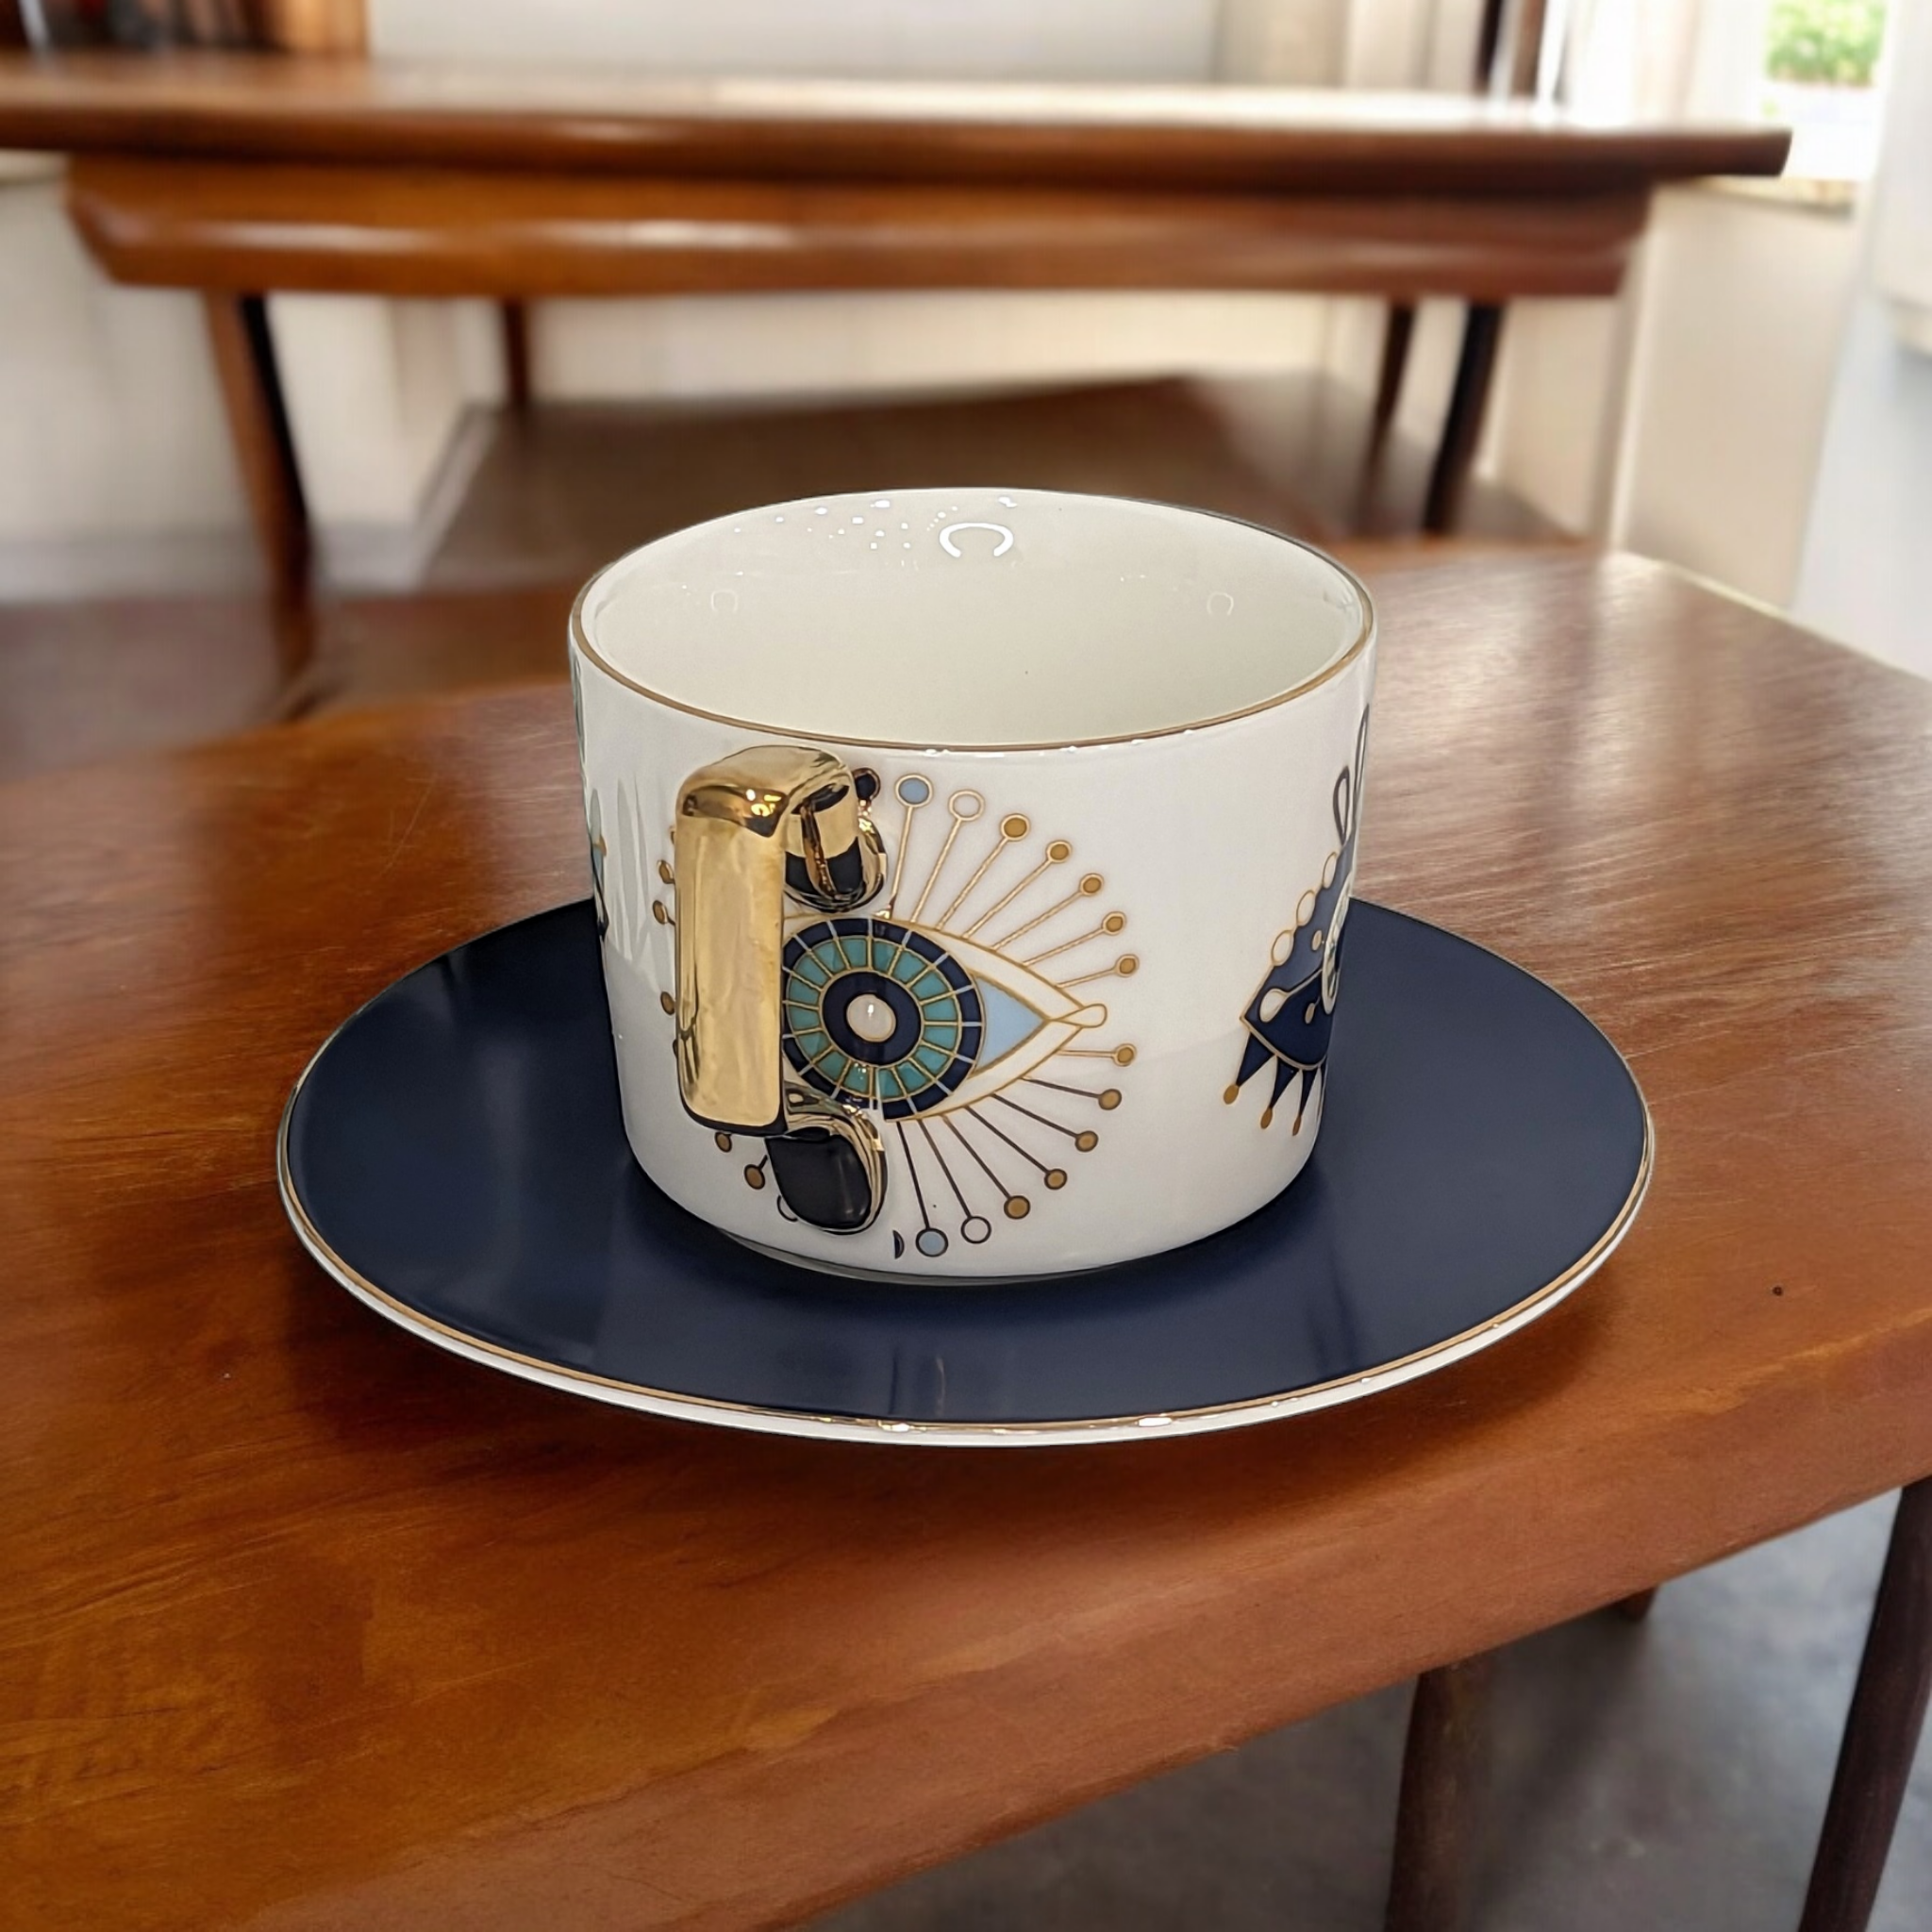 Evil Eye Ceramic Teacup Set - Blue and Gold